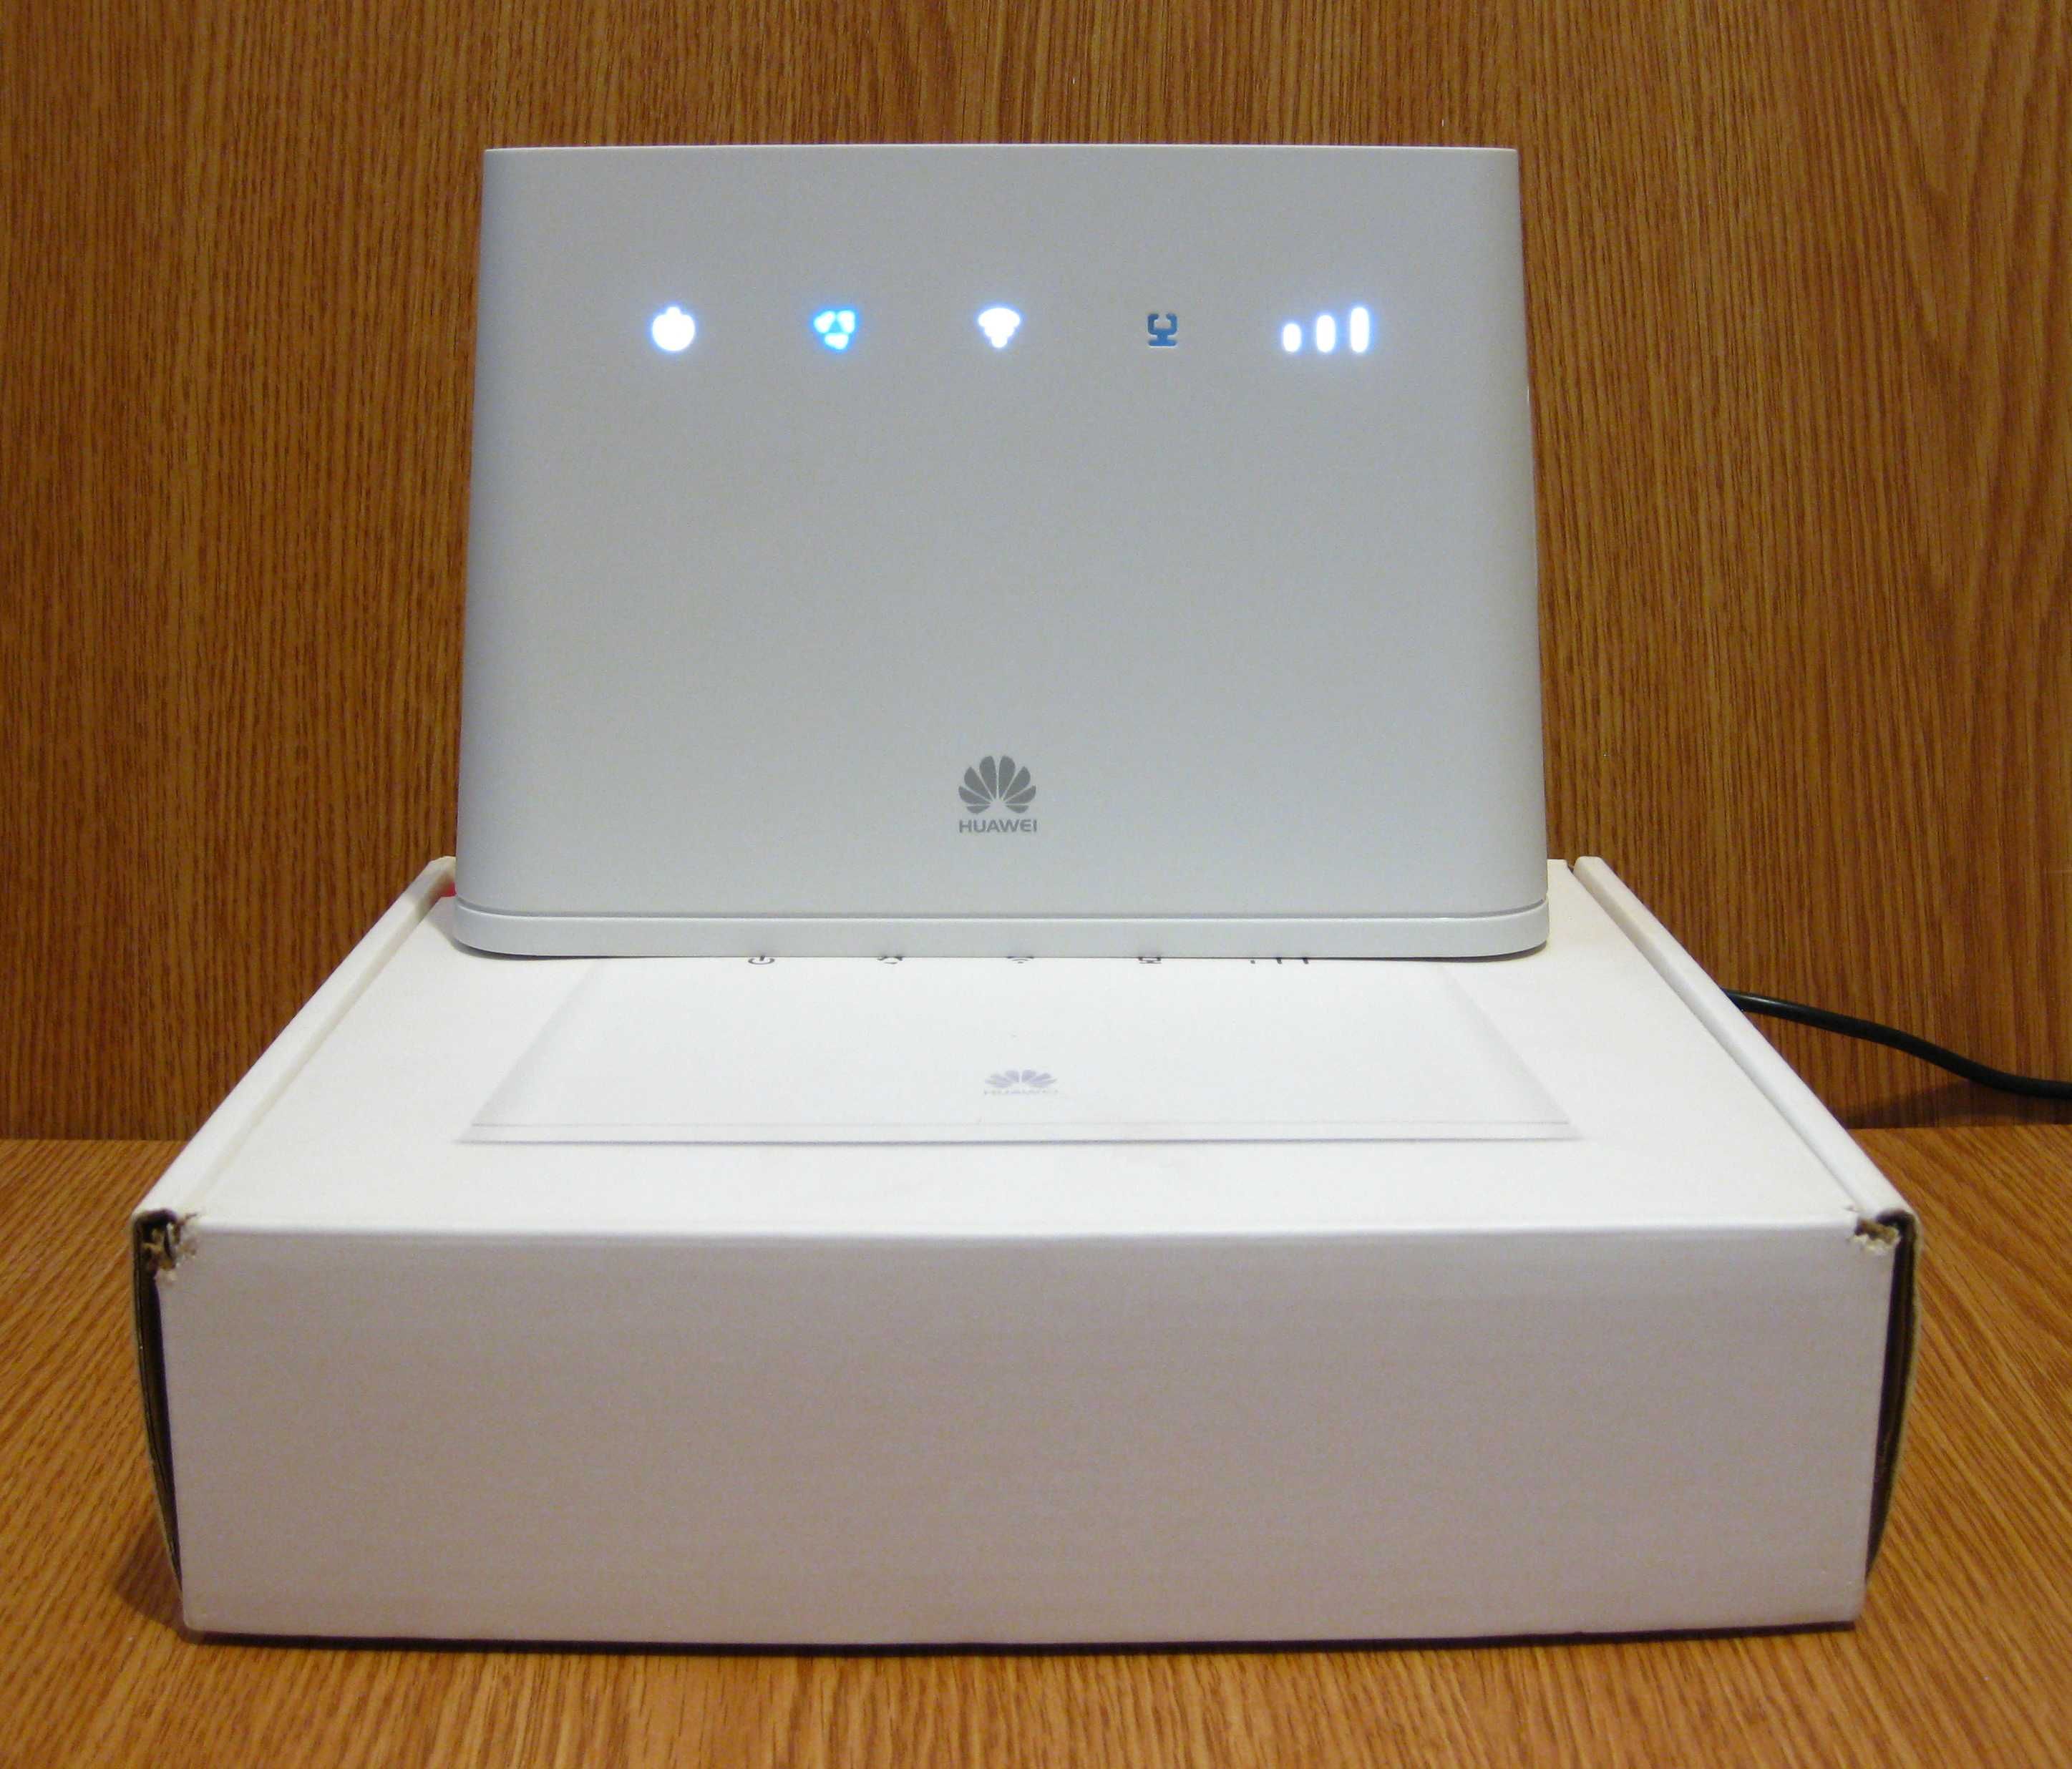 Huawei B311 B310 cu antena externa router WiFi cu SIM modem 4G liber